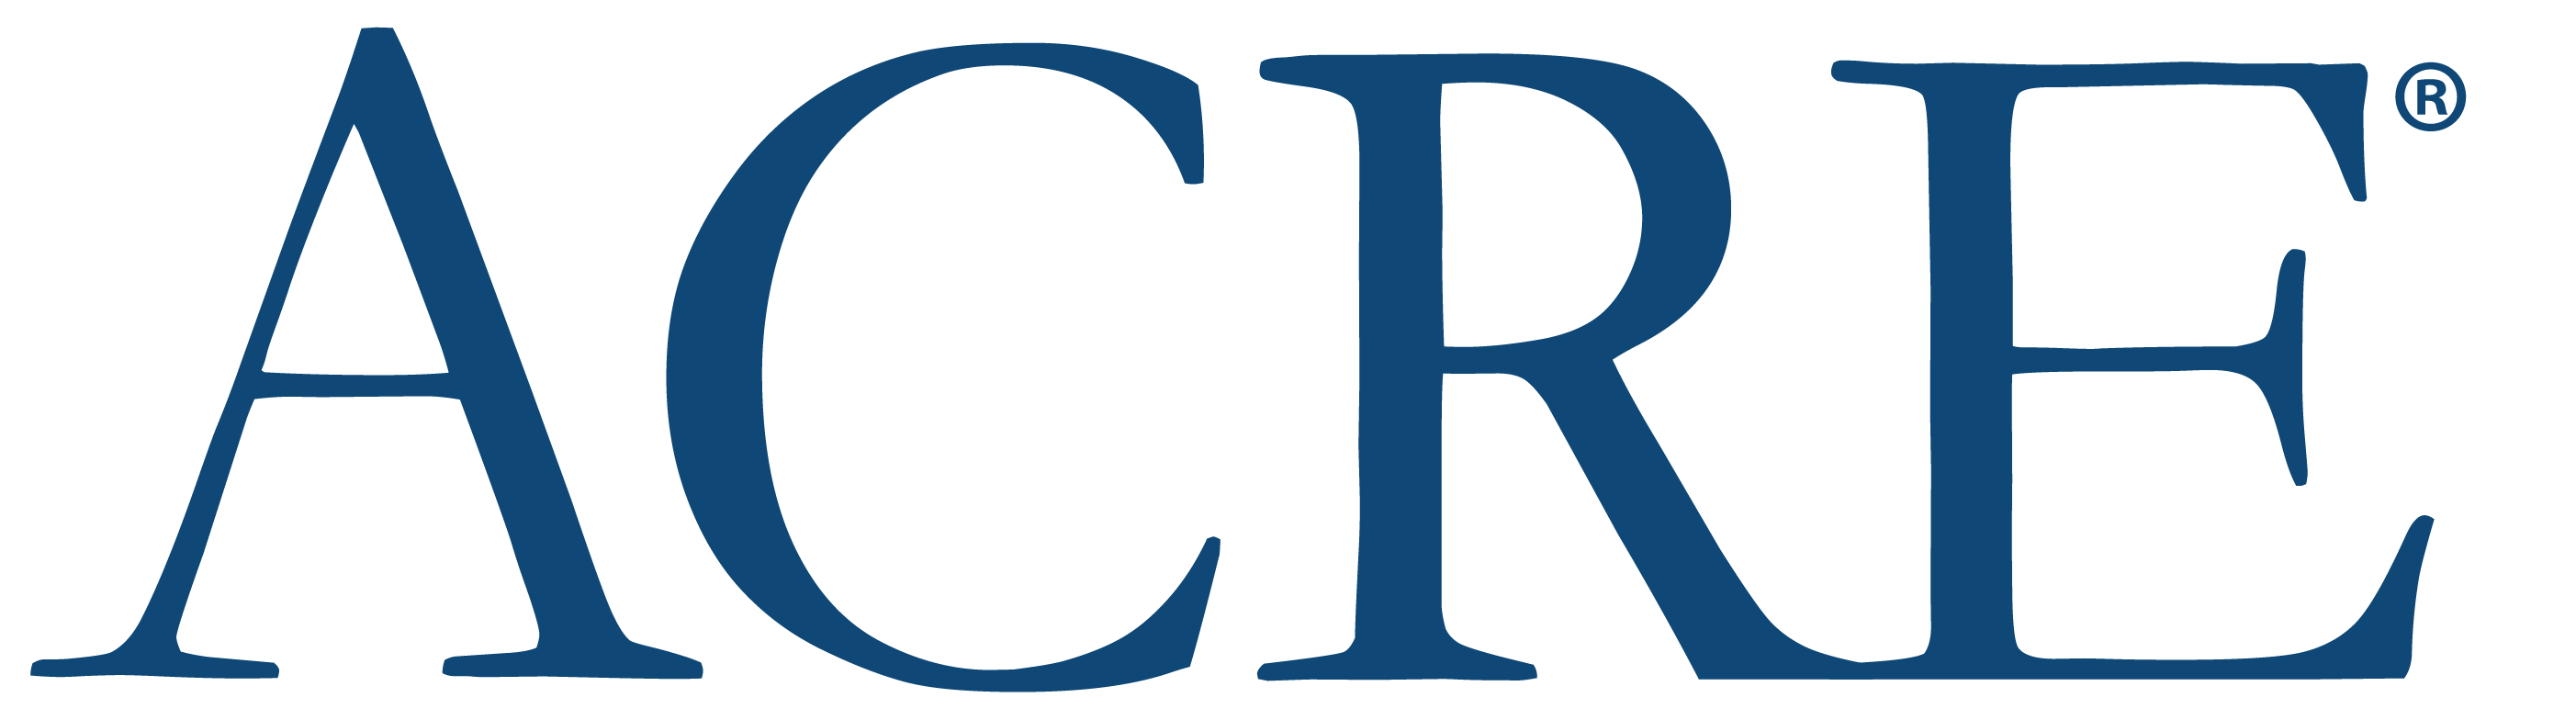 ACRE Company Logo